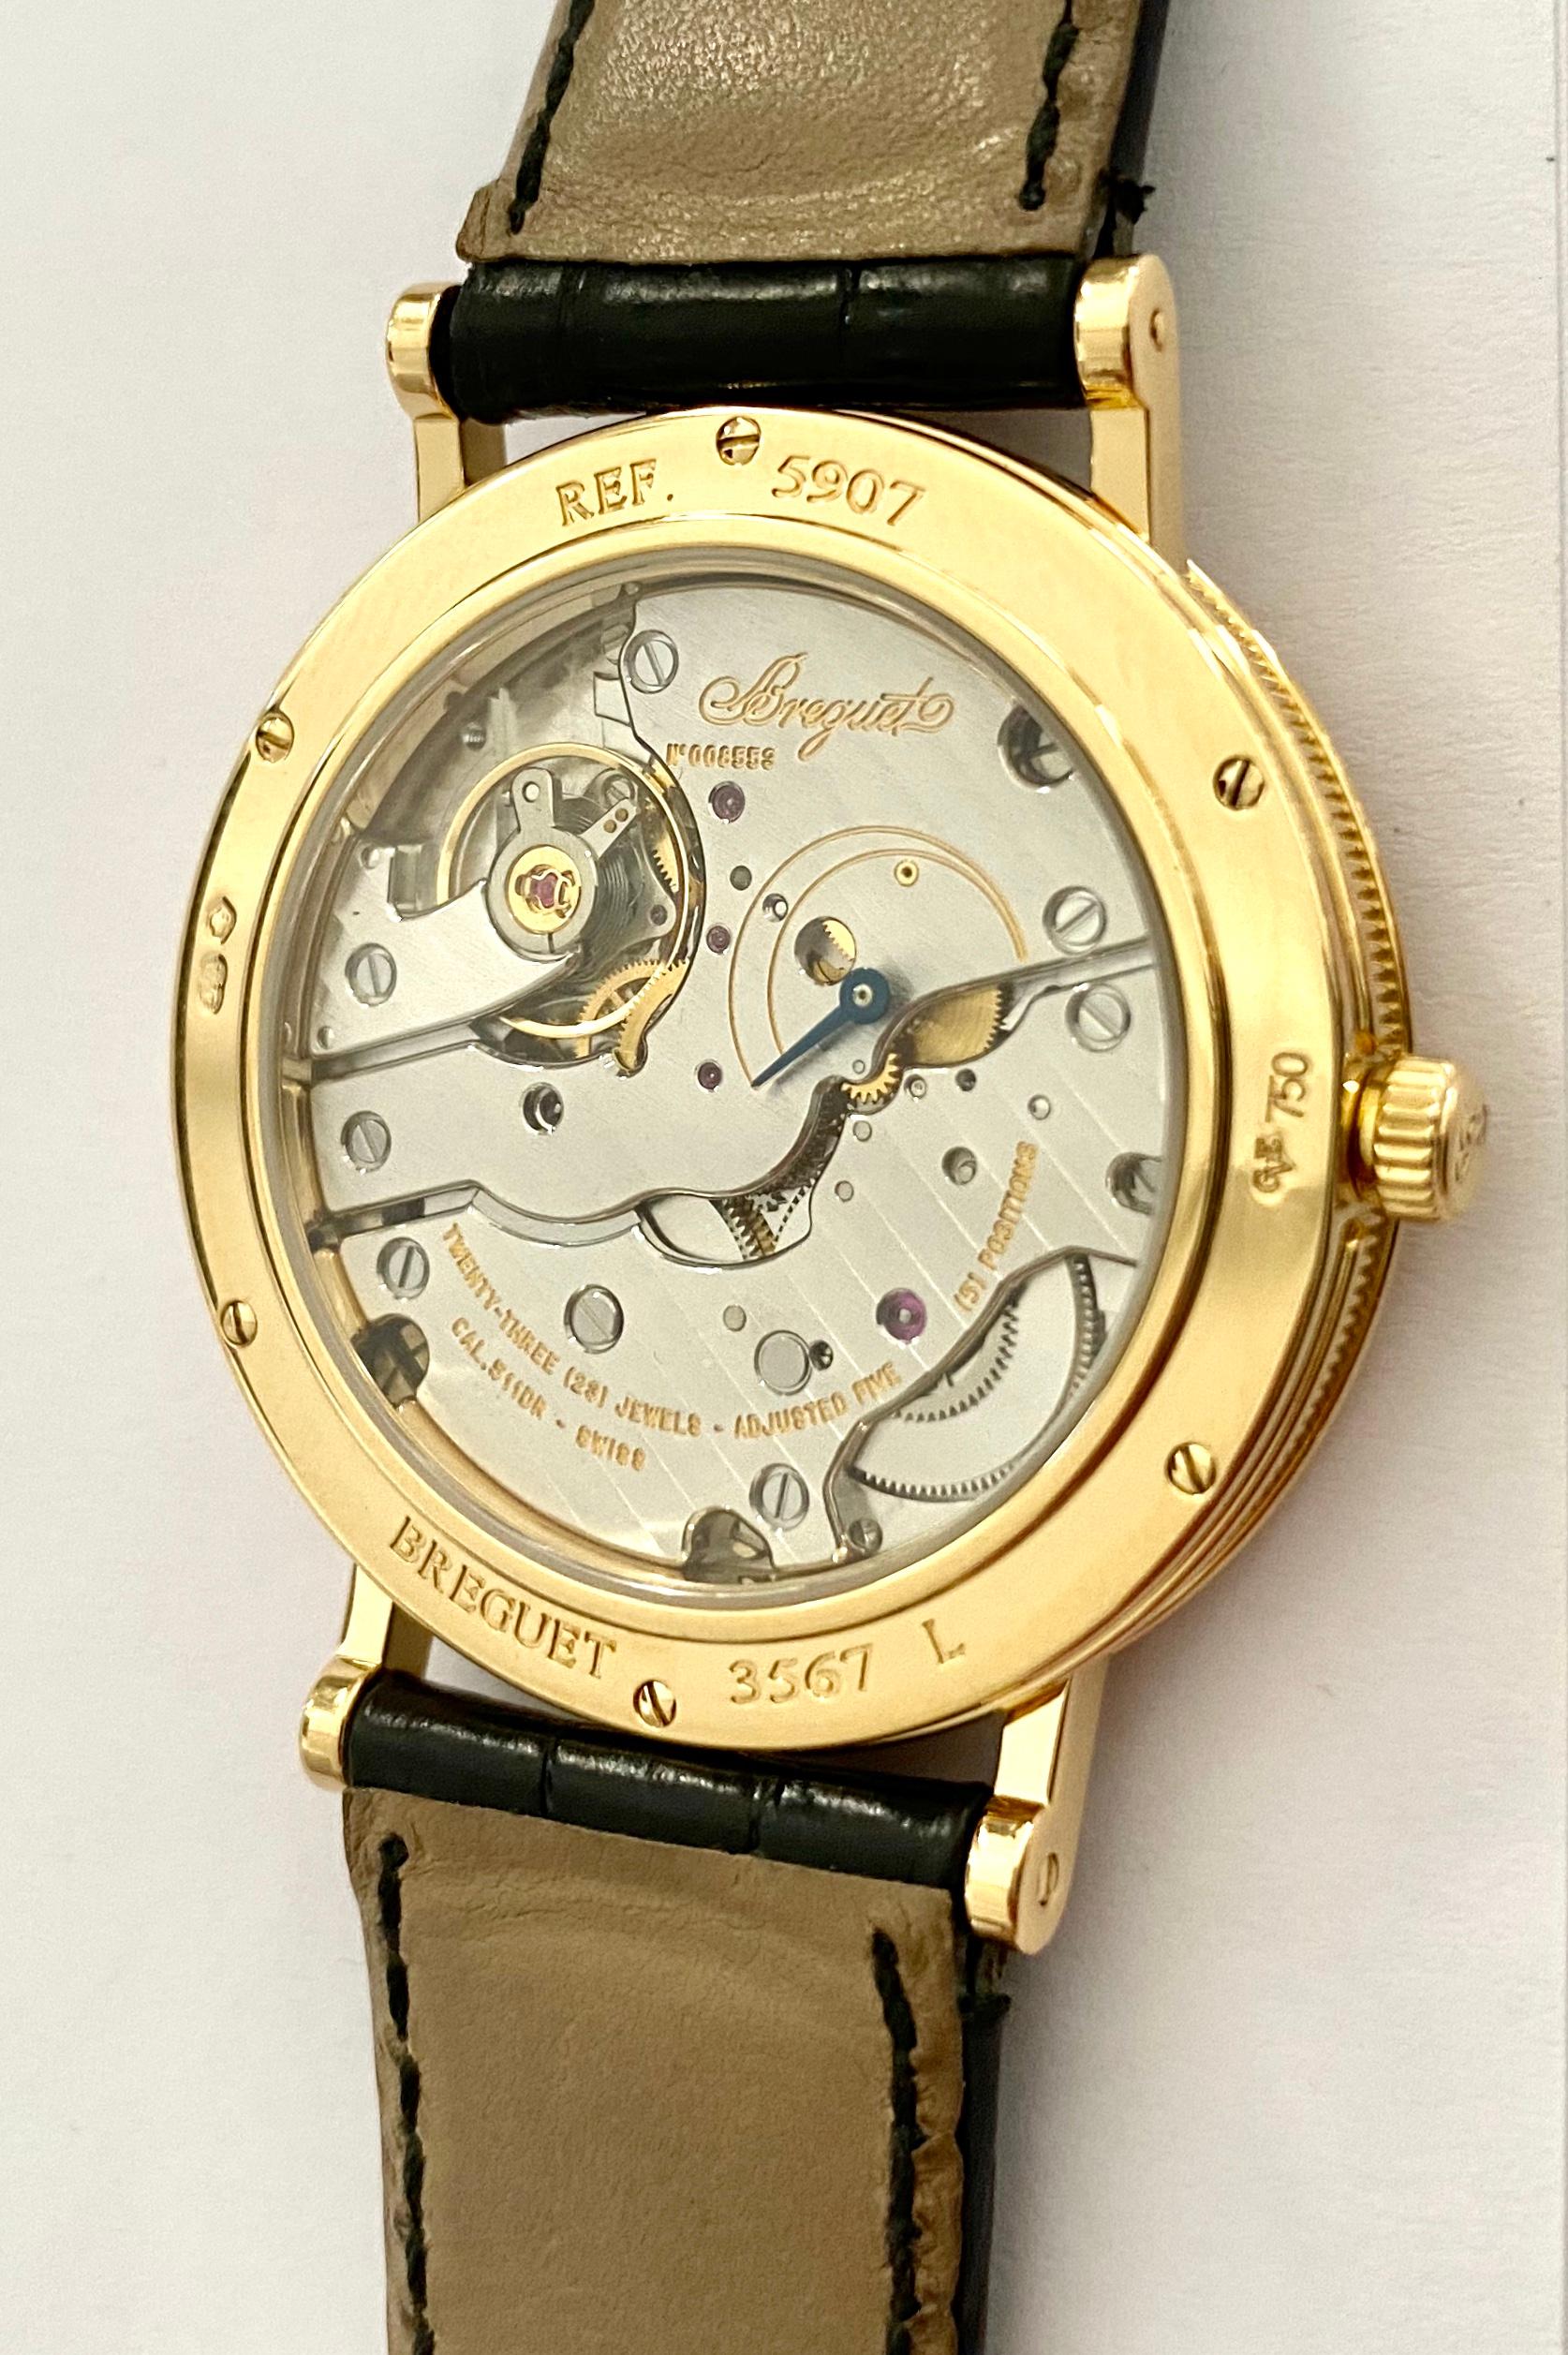 Classical Roman Breguet Watch, 18 Karat Yellow Gold, Nr 5907 